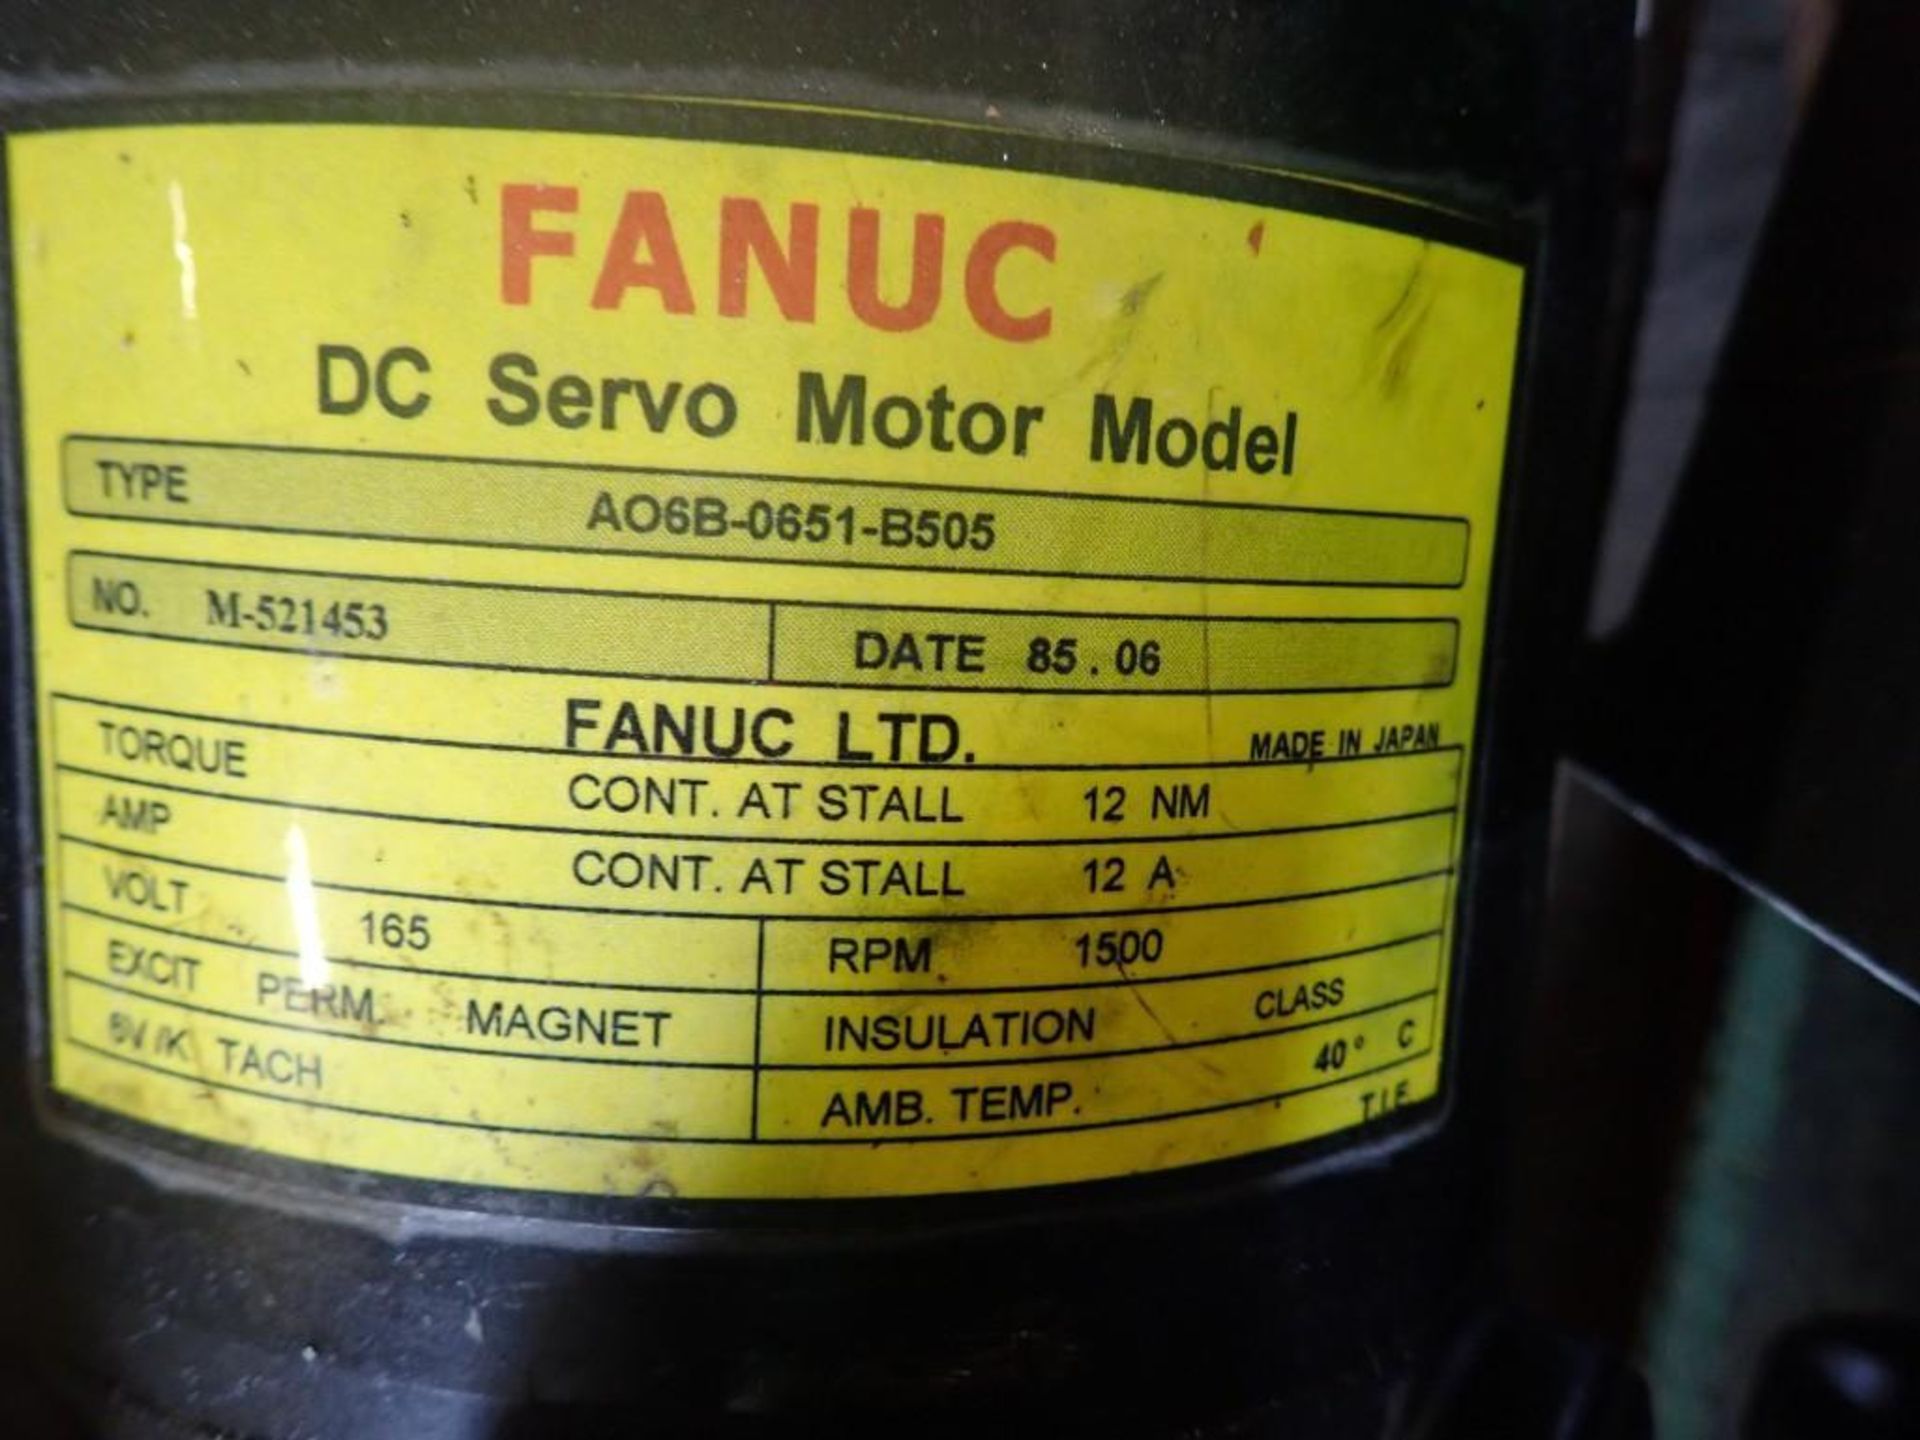 Fanuc #A06B-0651-B505 DC Servo Motor - Image 5 of 5